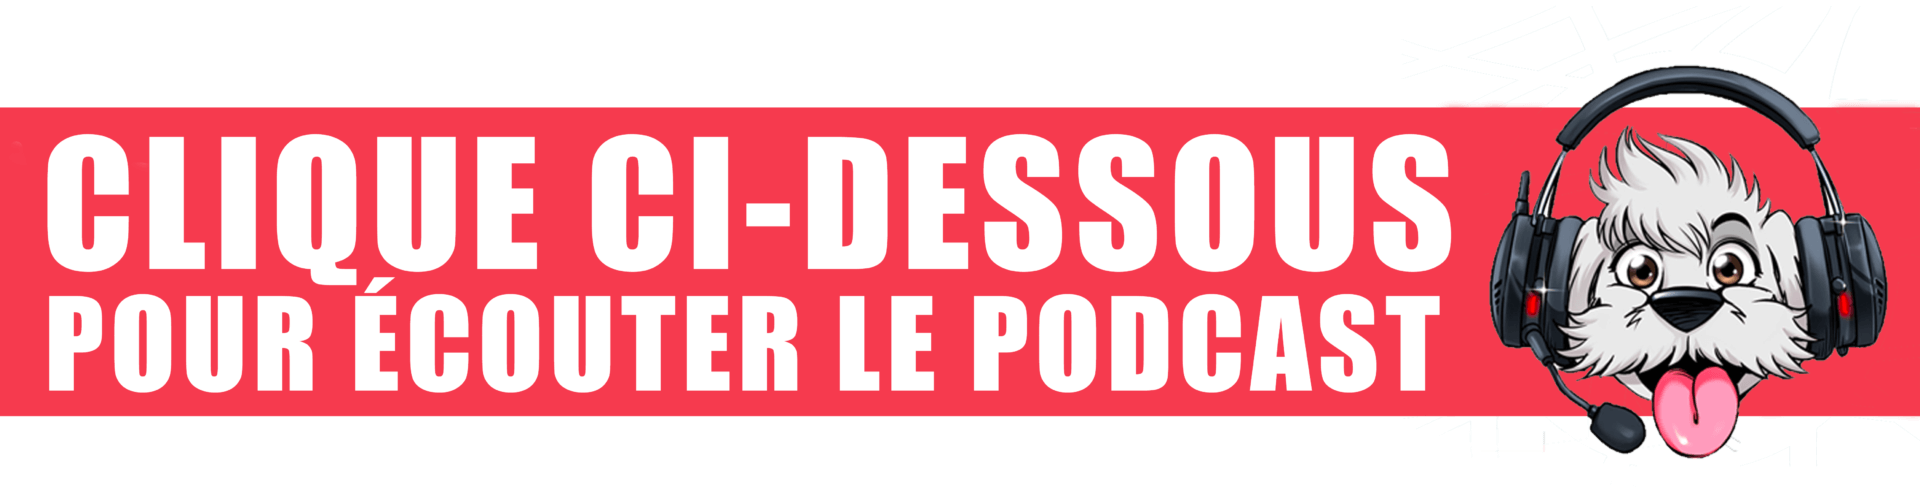 Bannière Podcast Tout Faire : Nouvelles attentes pros et particuliers 